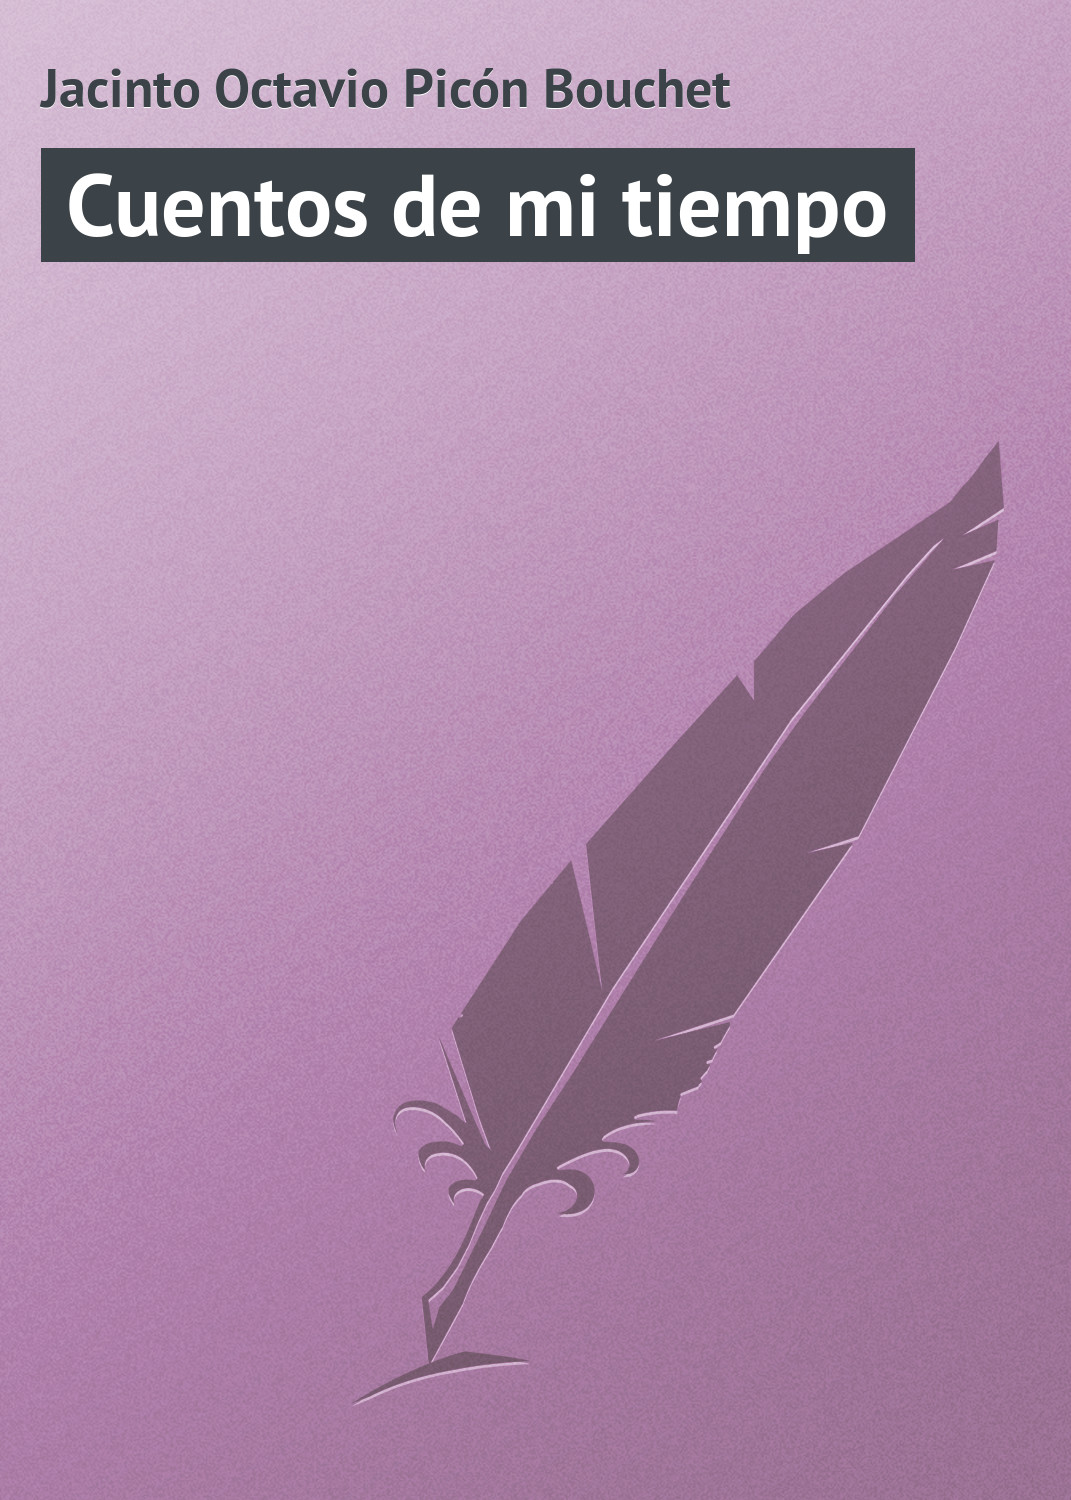 Книга Cuentos de mi tiempo из серии , созданная Jacinto Octavio, может относится к жанру Зарубежная старинная литература, Зарубежная классика. Стоимость электронной книги Cuentos de mi tiempo с идентификатором 21107806 составляет 5.99 руб.